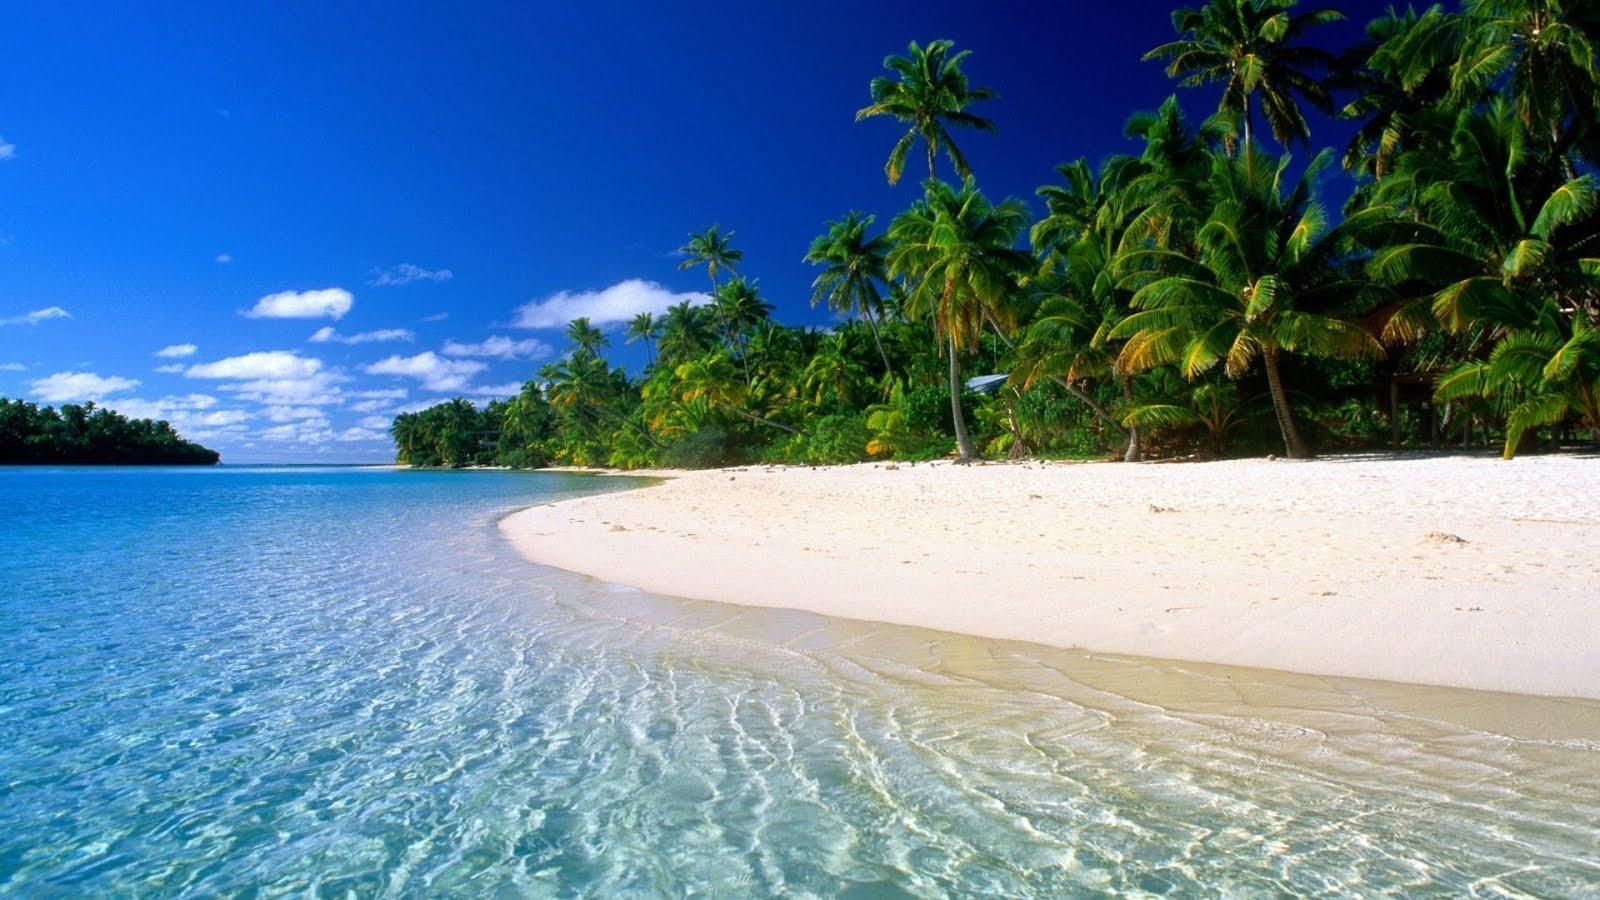 Những hình nền biển Caribbean sẽ đưa bạn đến một thế giới đầy màu sắc, với biển lớn, bãi cát trắng và cây cọ xanh quanh năm. Hãy cùng chiêm ngưỡng những đường cong của bờ biển và ngắm những ngôi nhà đầy màu sắc trên nền trời xanh.